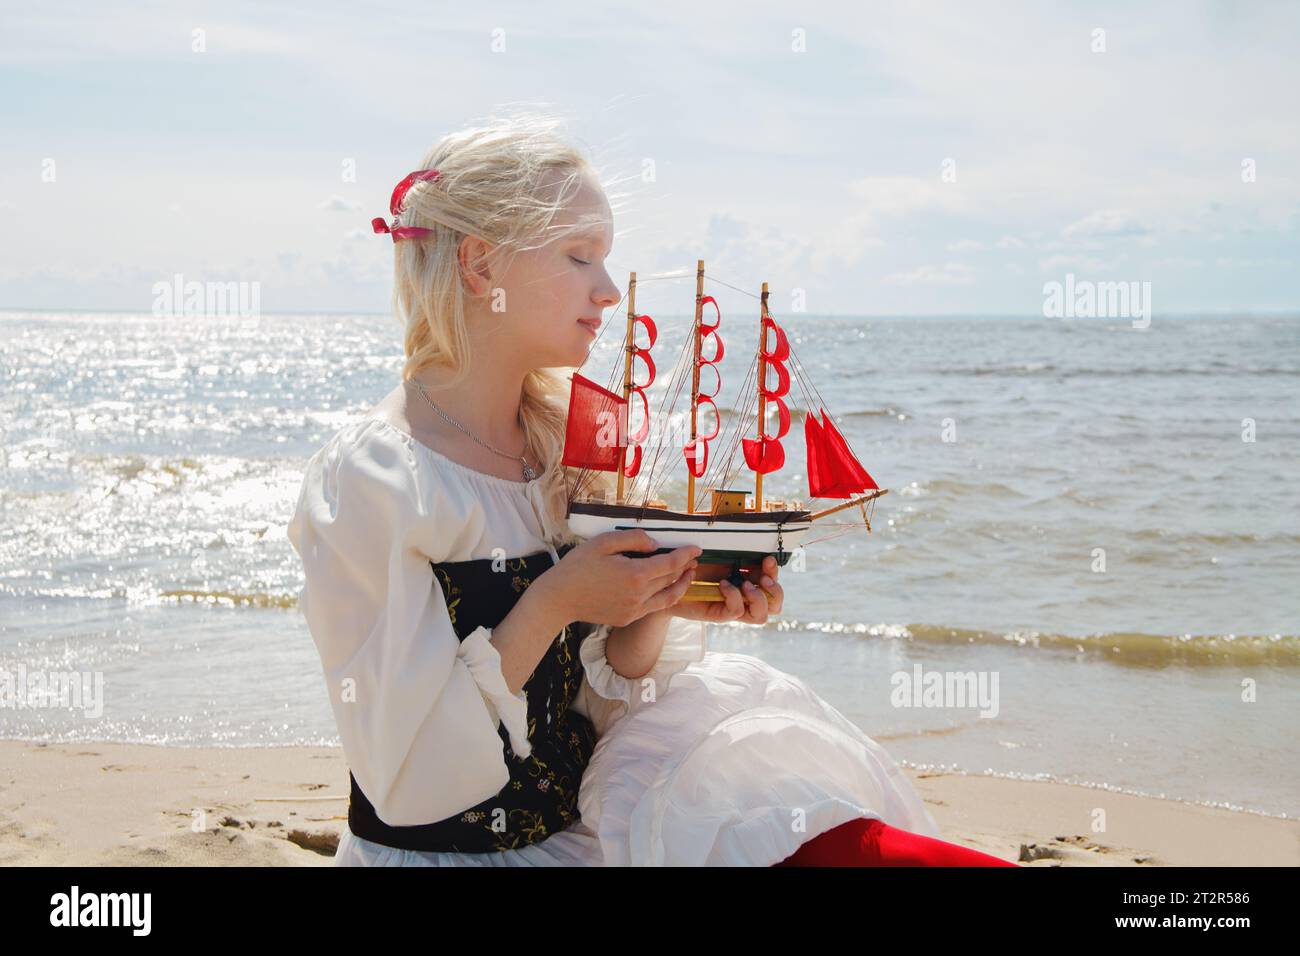 Bella giovane donna che regge un piccolo yacht con vele rosse sulla spiaggia di mare Foto Stock